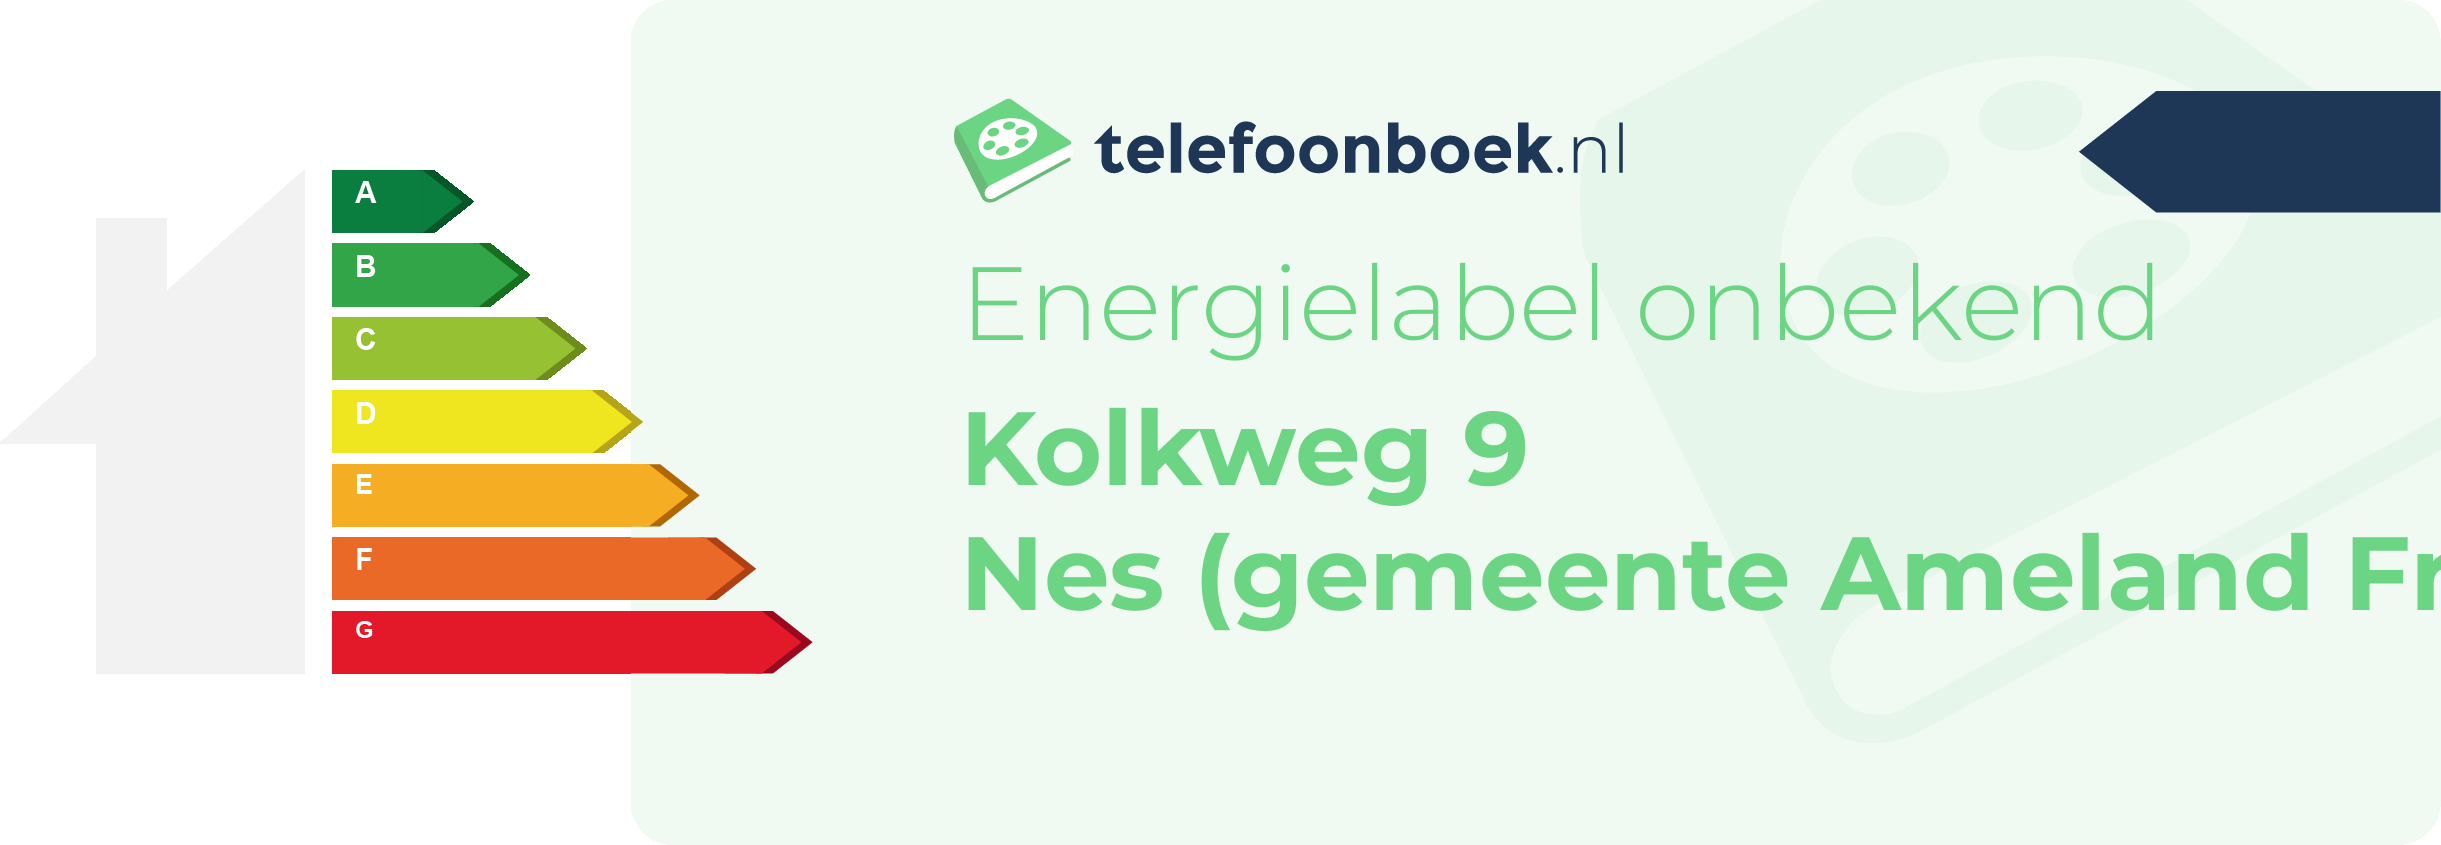 Energielabel Kolkweg 9 Nes (gemeente Ameland Friesland)